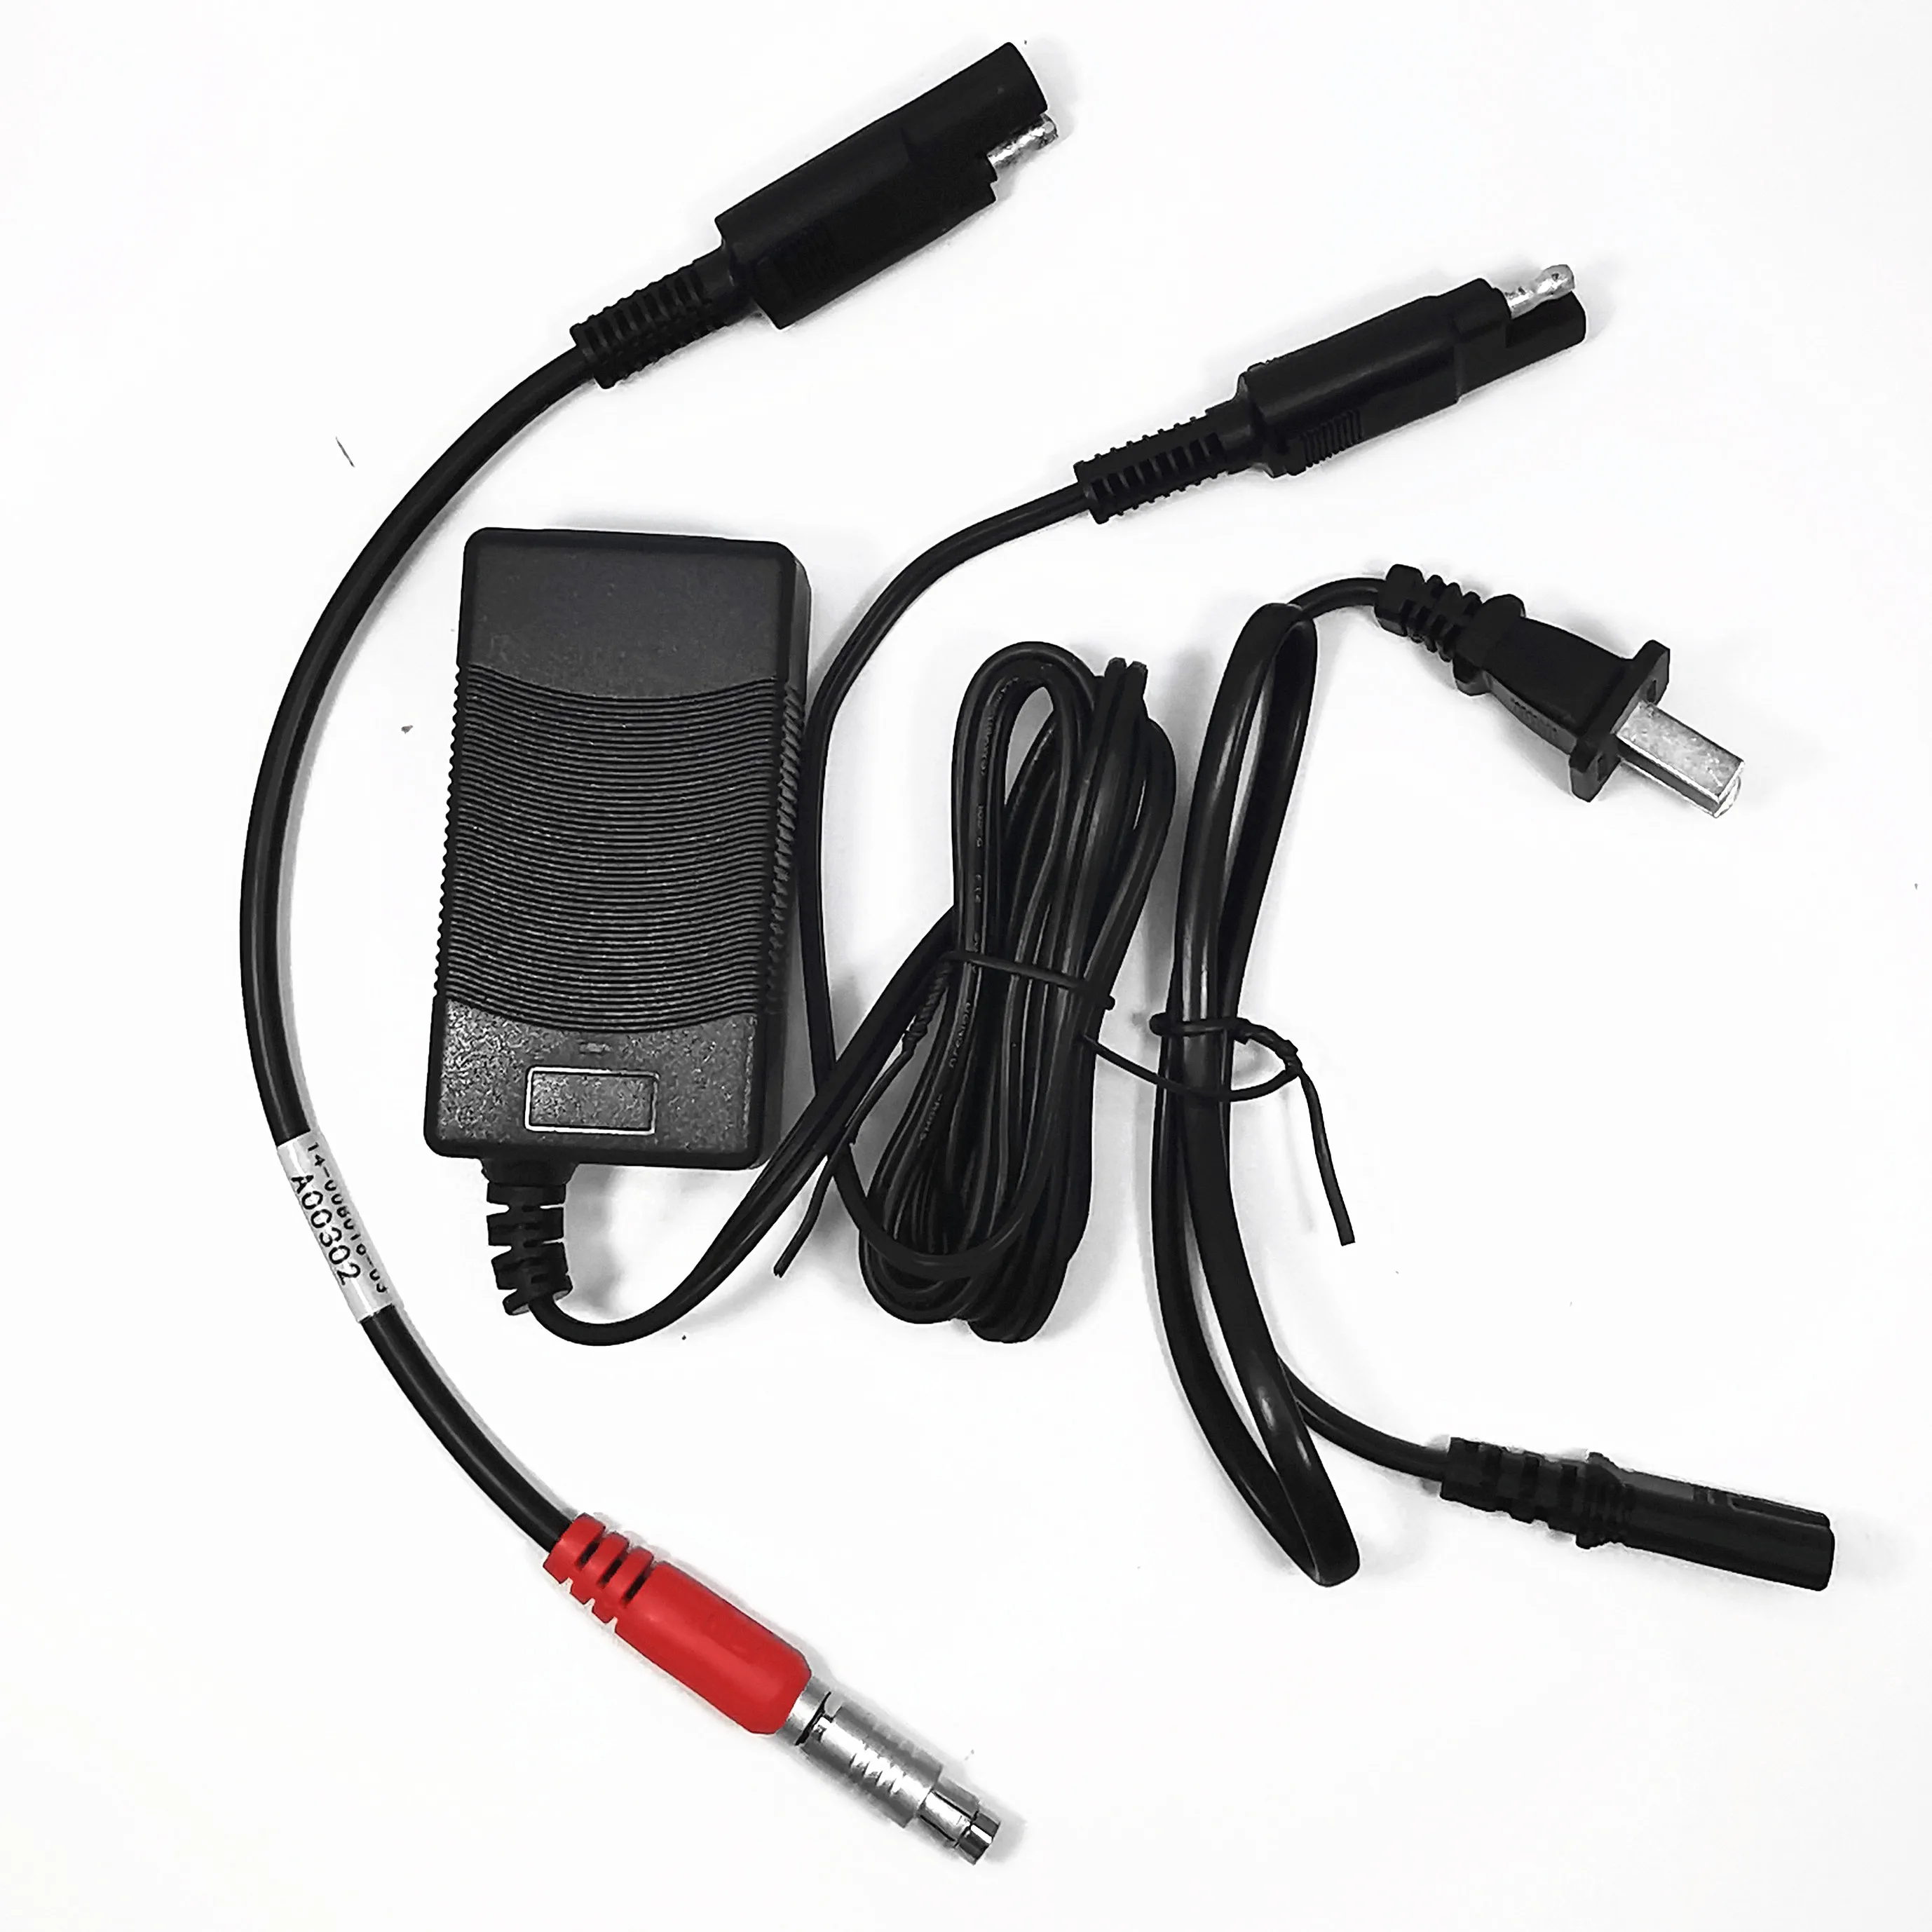 A00302 силовой кабель + адаптер питания Hiper, зарядное устройство для GB500 1000 GR3 GR5 GPS HiPer Lite Surveying